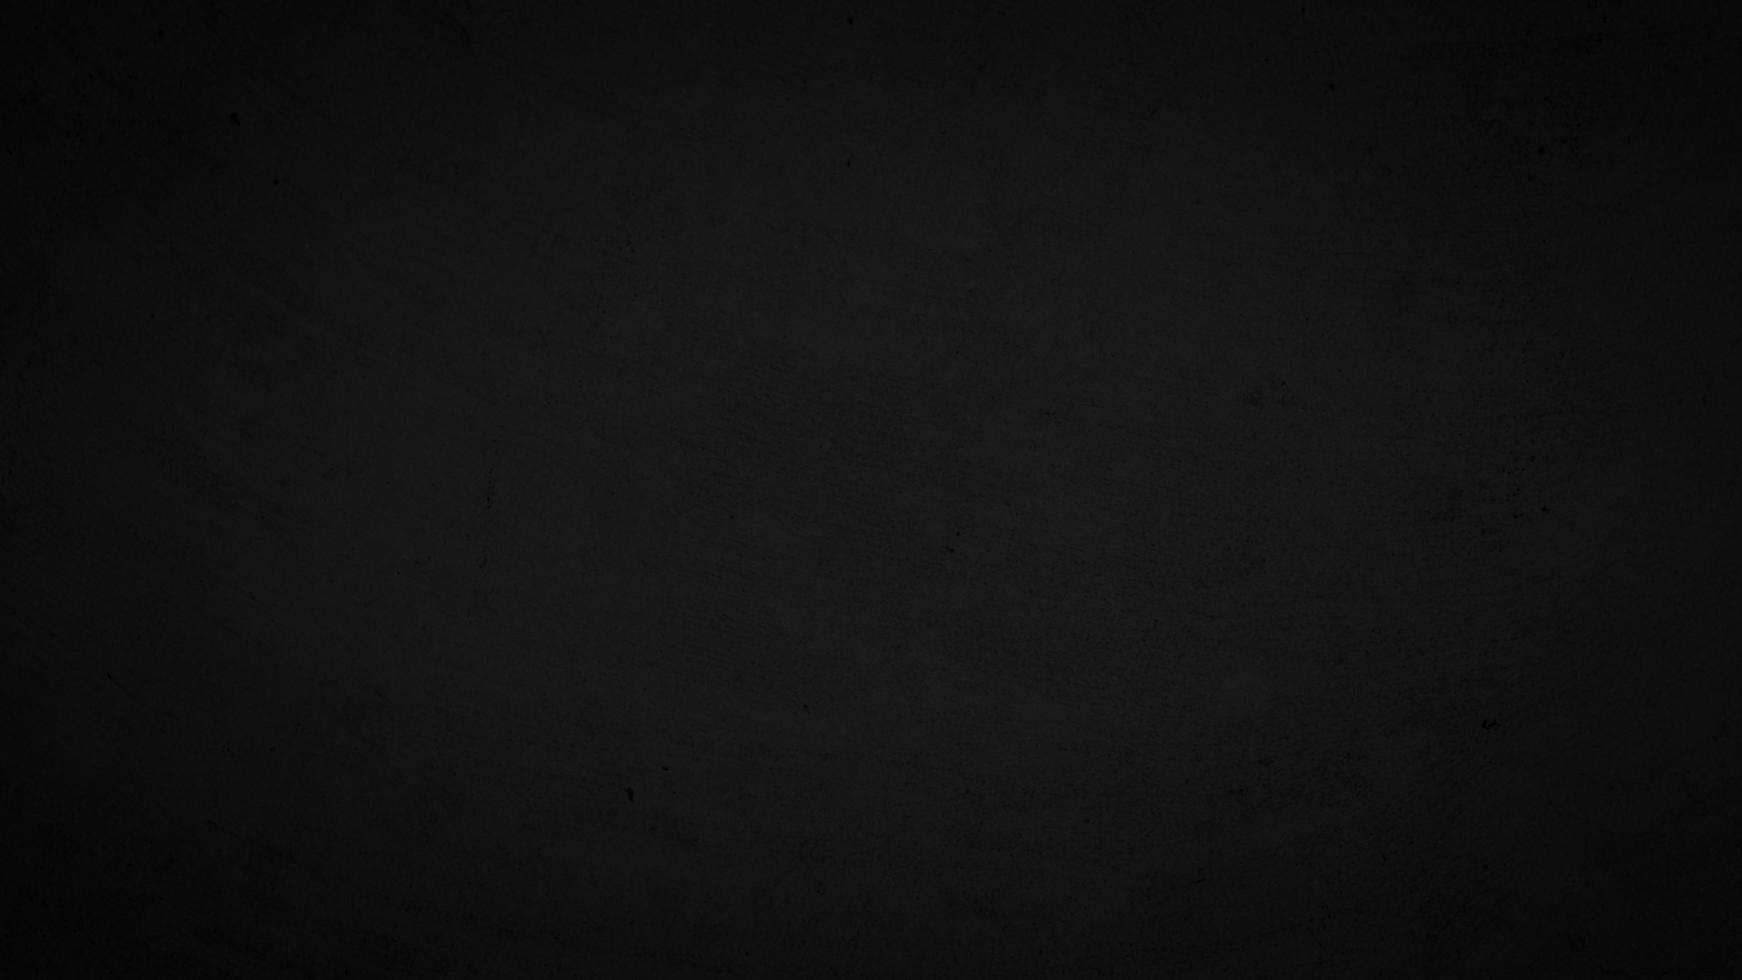 fondo degradado negro superpuesto fondo abstracto negro, noche, oscuro, tarde, con espacio para texto, para un fondo... foto